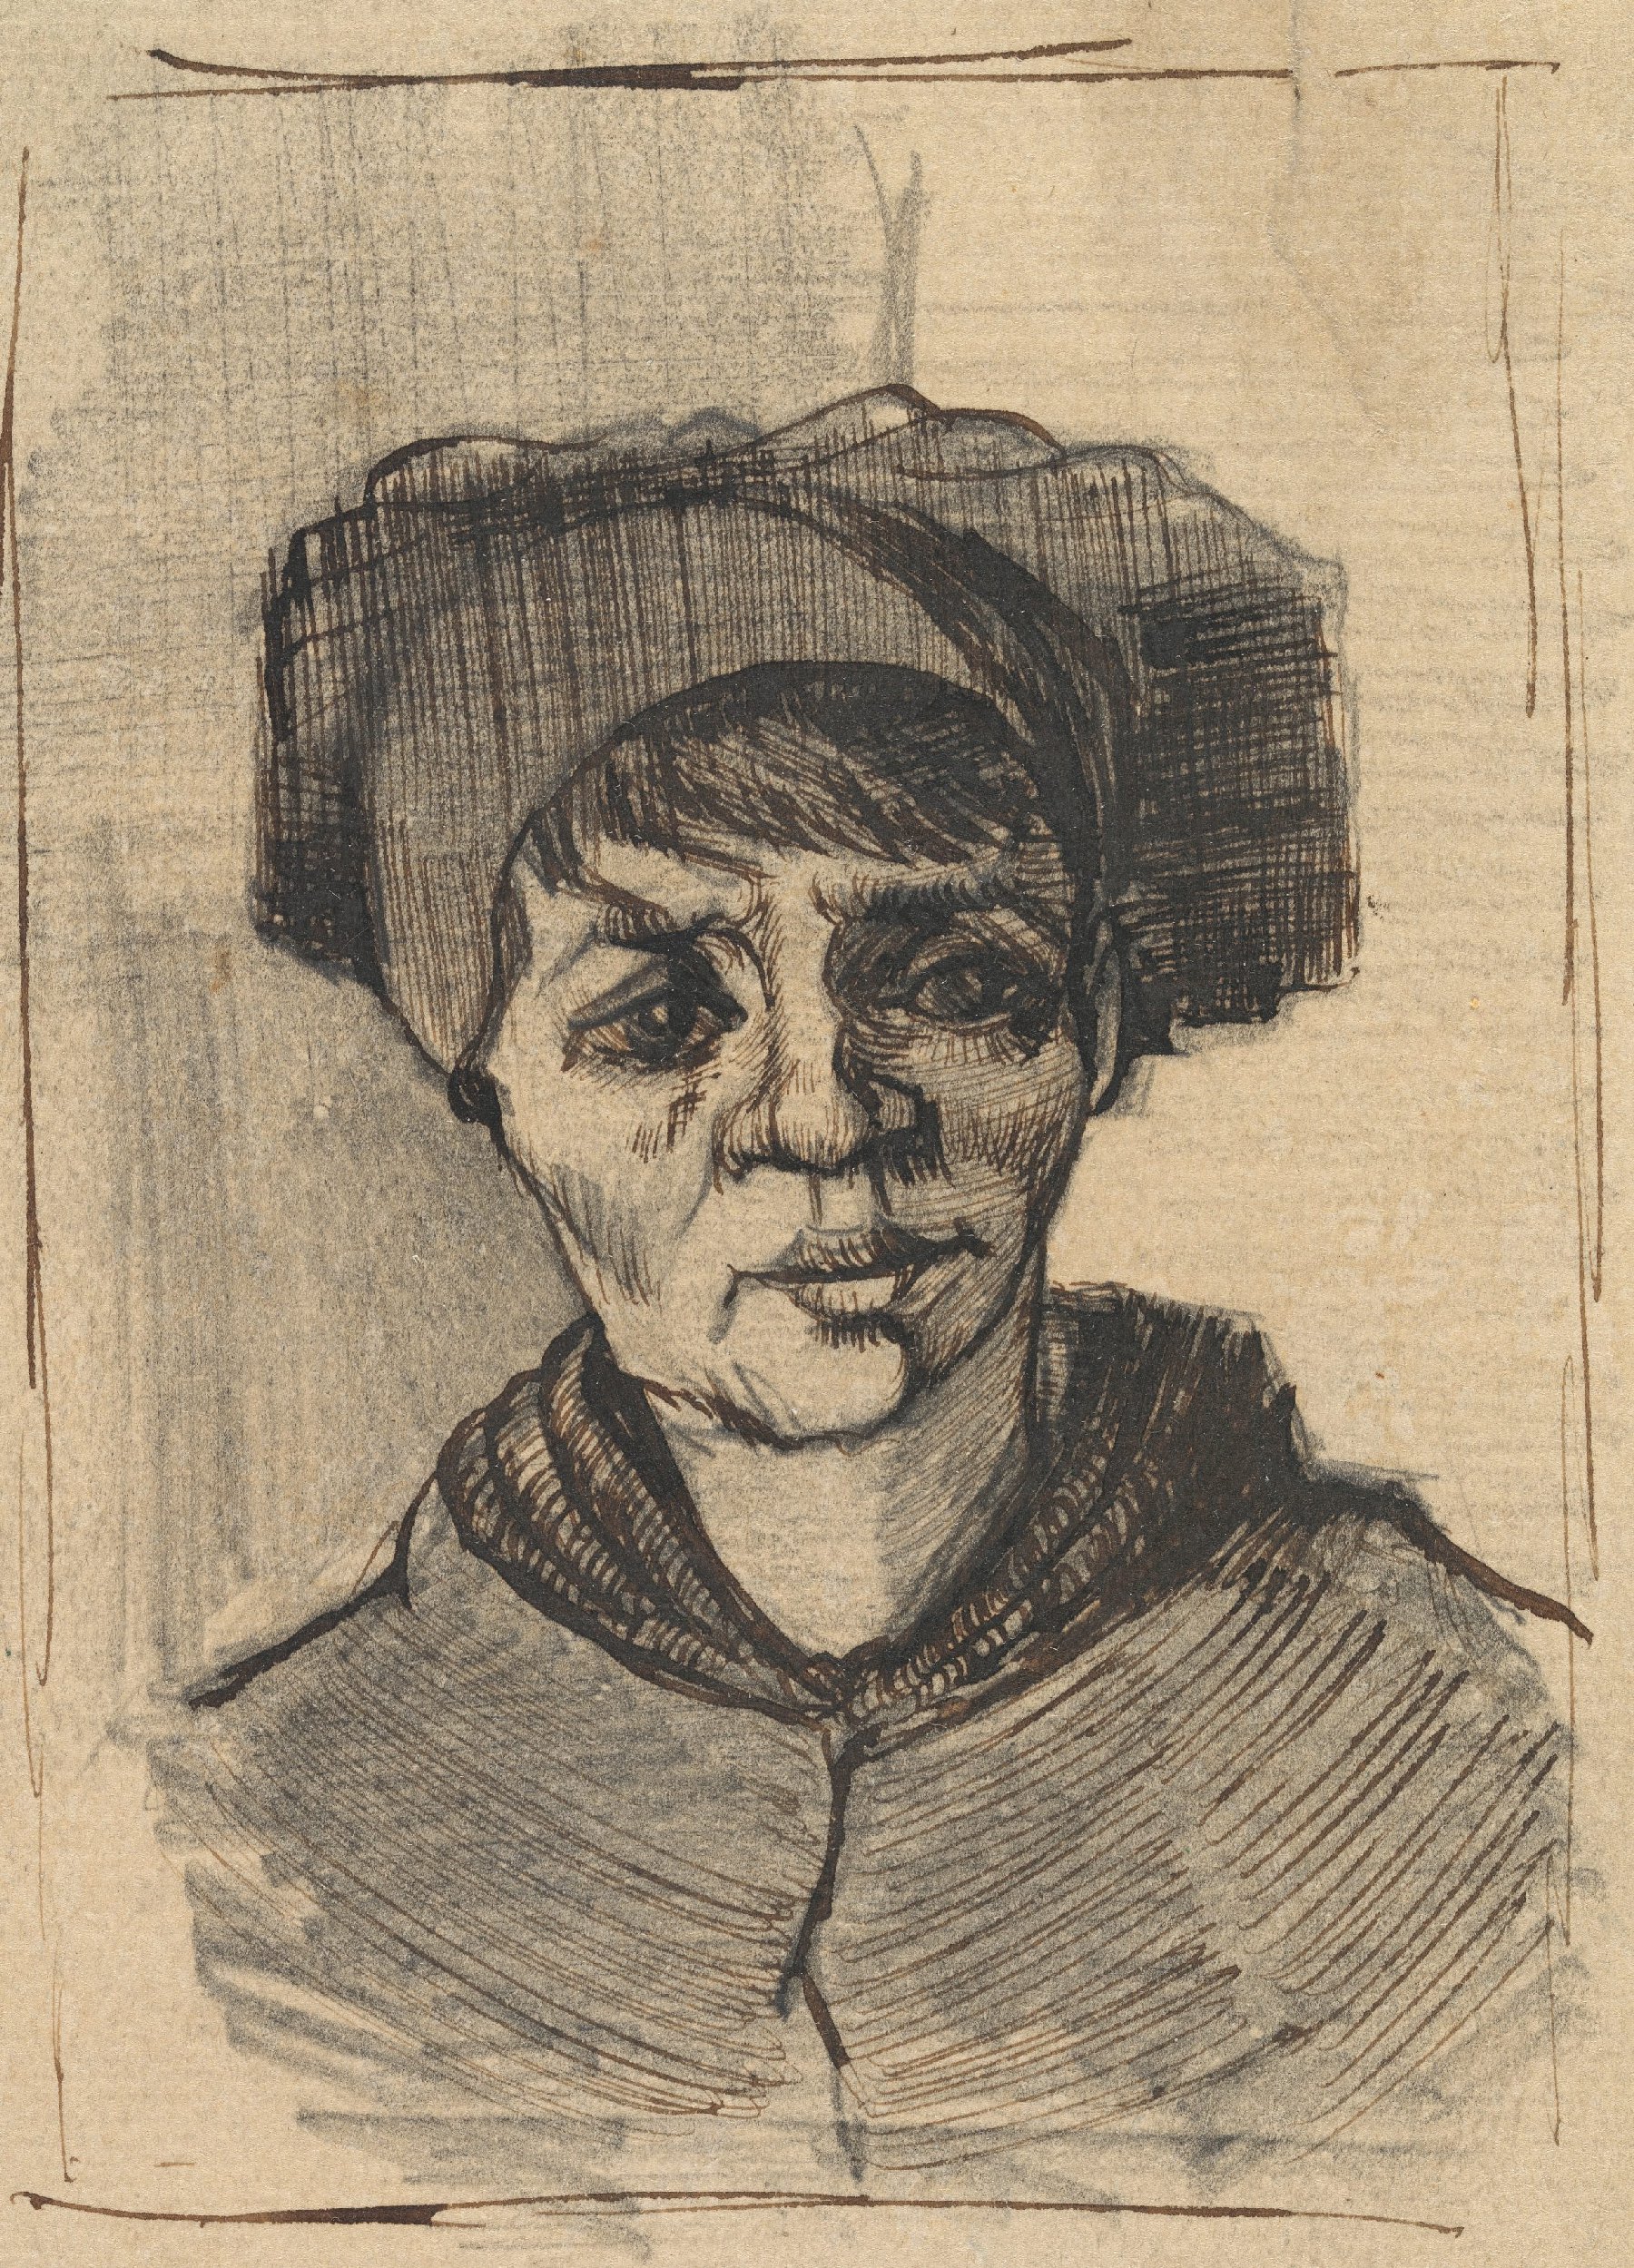 Kop van een vrouw Vincent van Gogh (1853 - 1890), Nuenen, december 1884-januari 1885